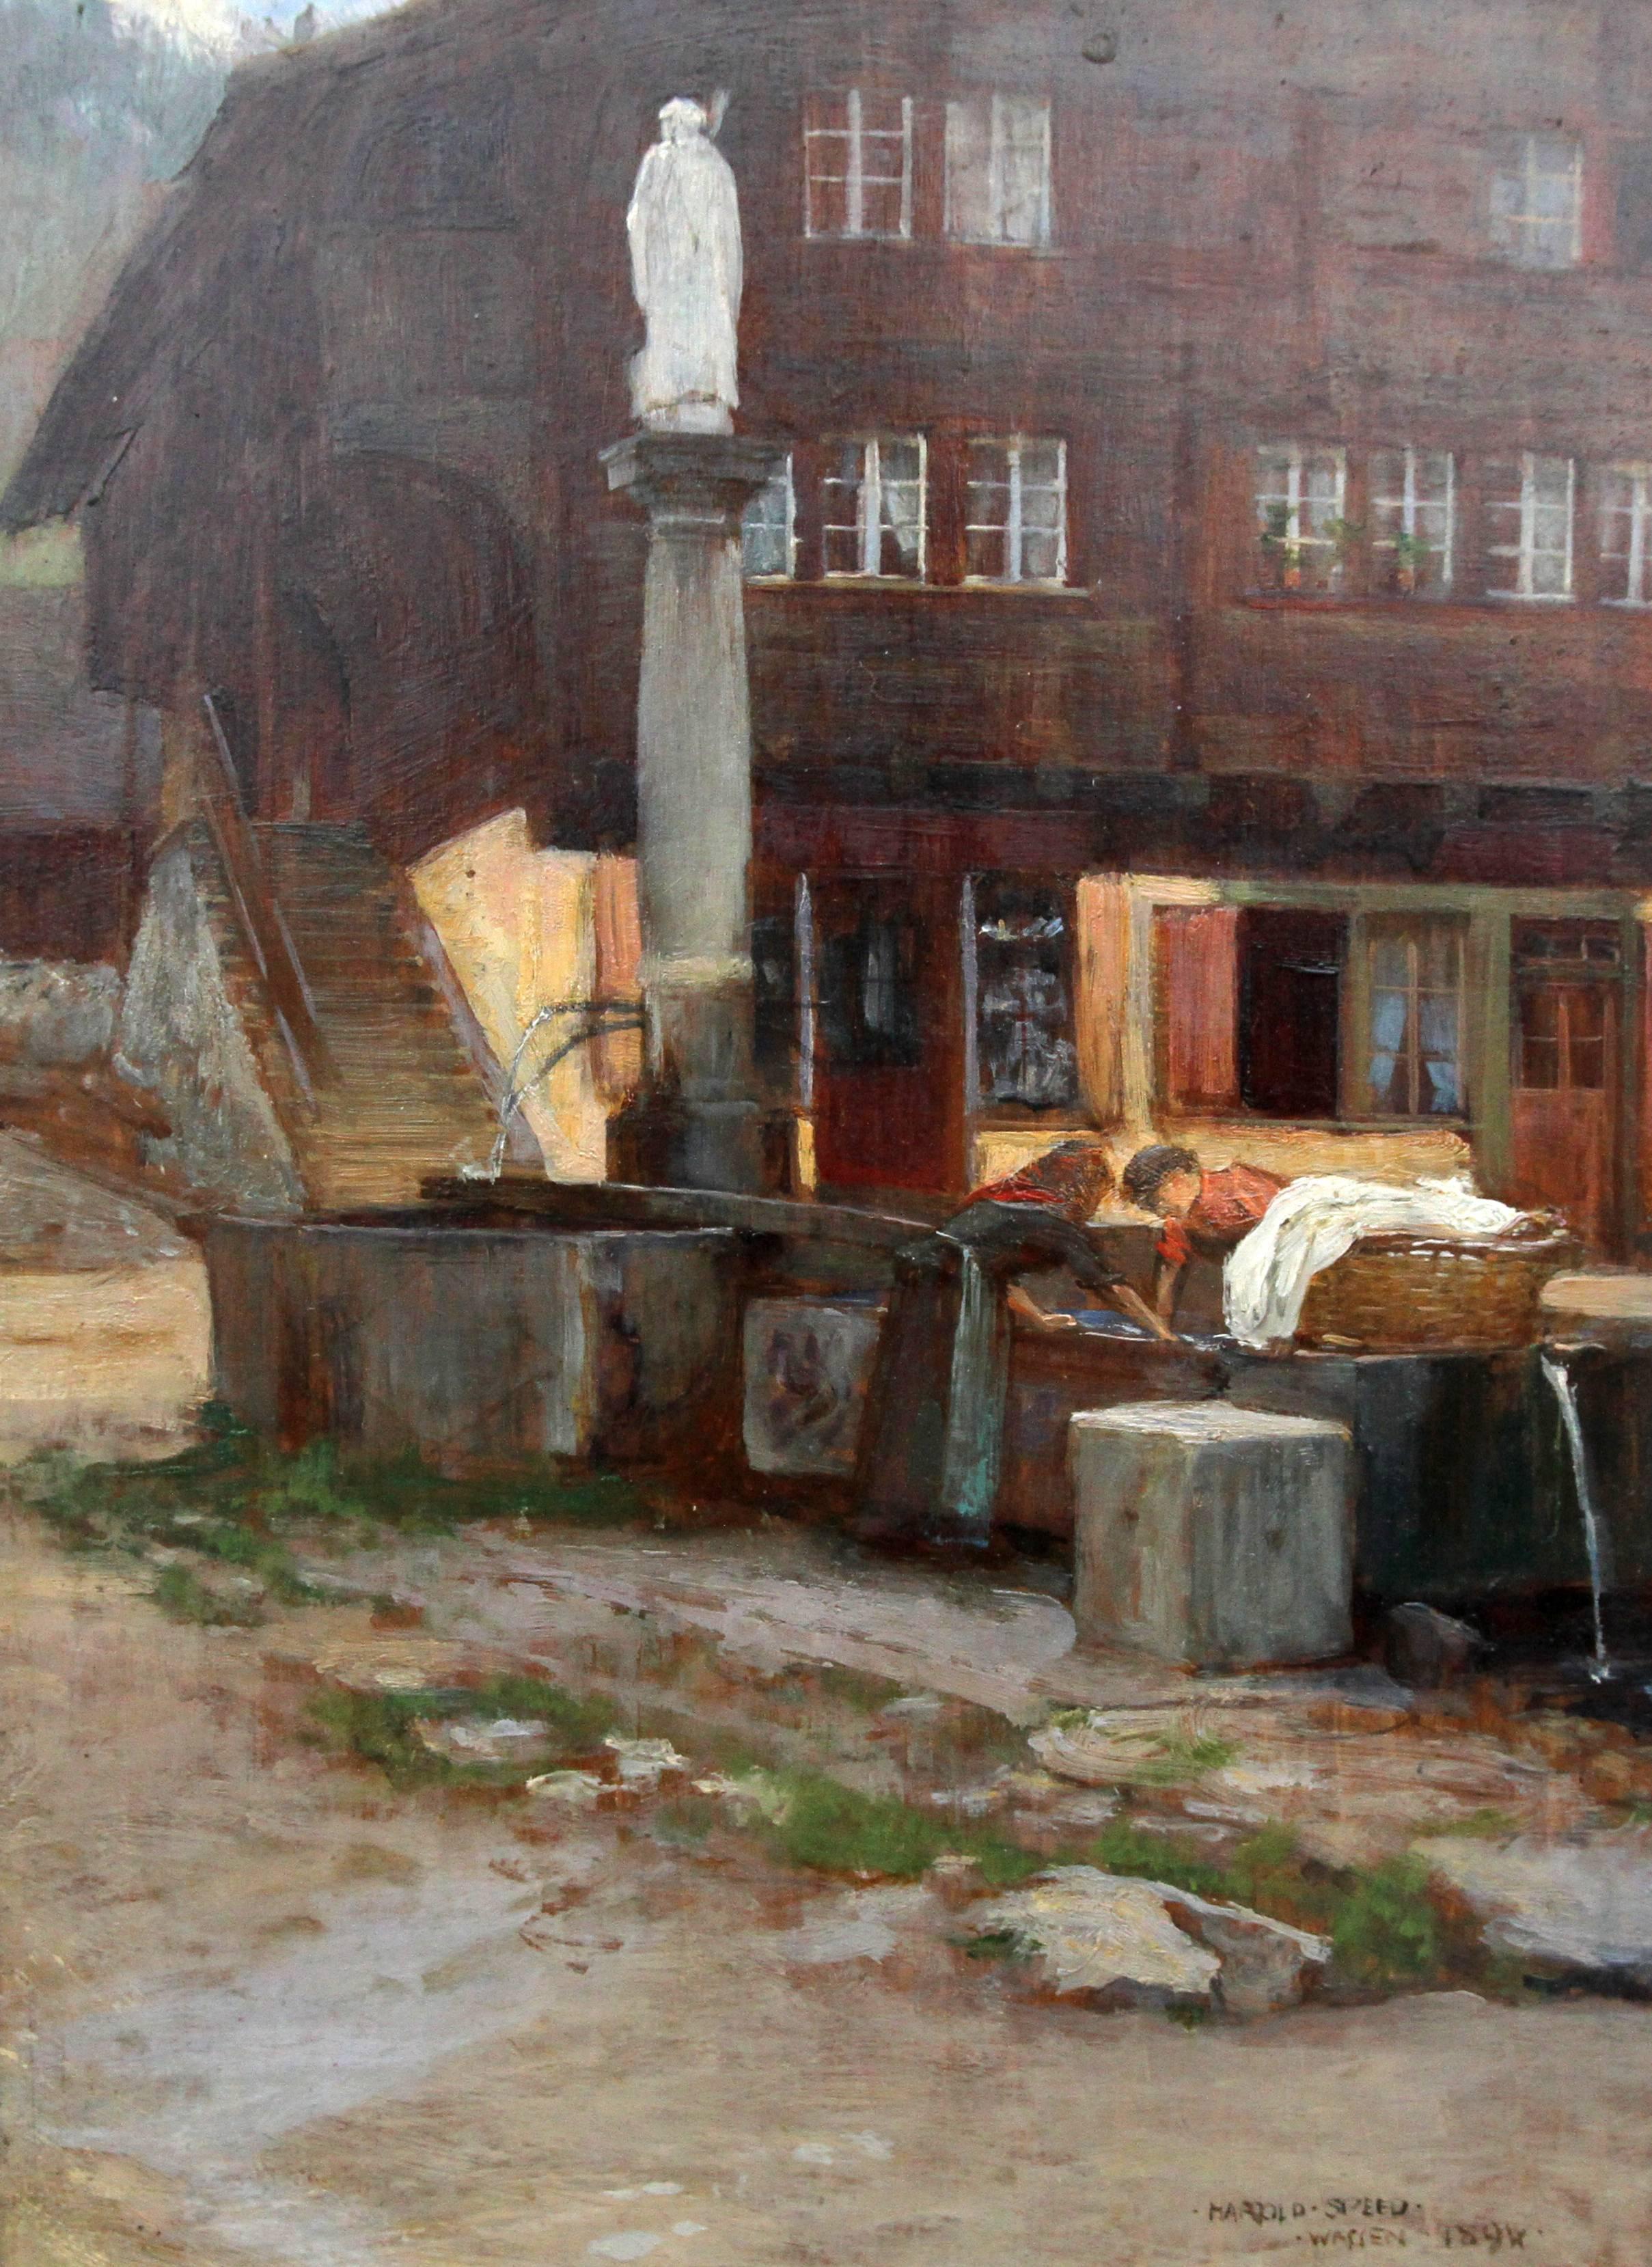 Wassen Switzerland - British Victorian art Impressionist oil painting of village - Painting by Harold Speed